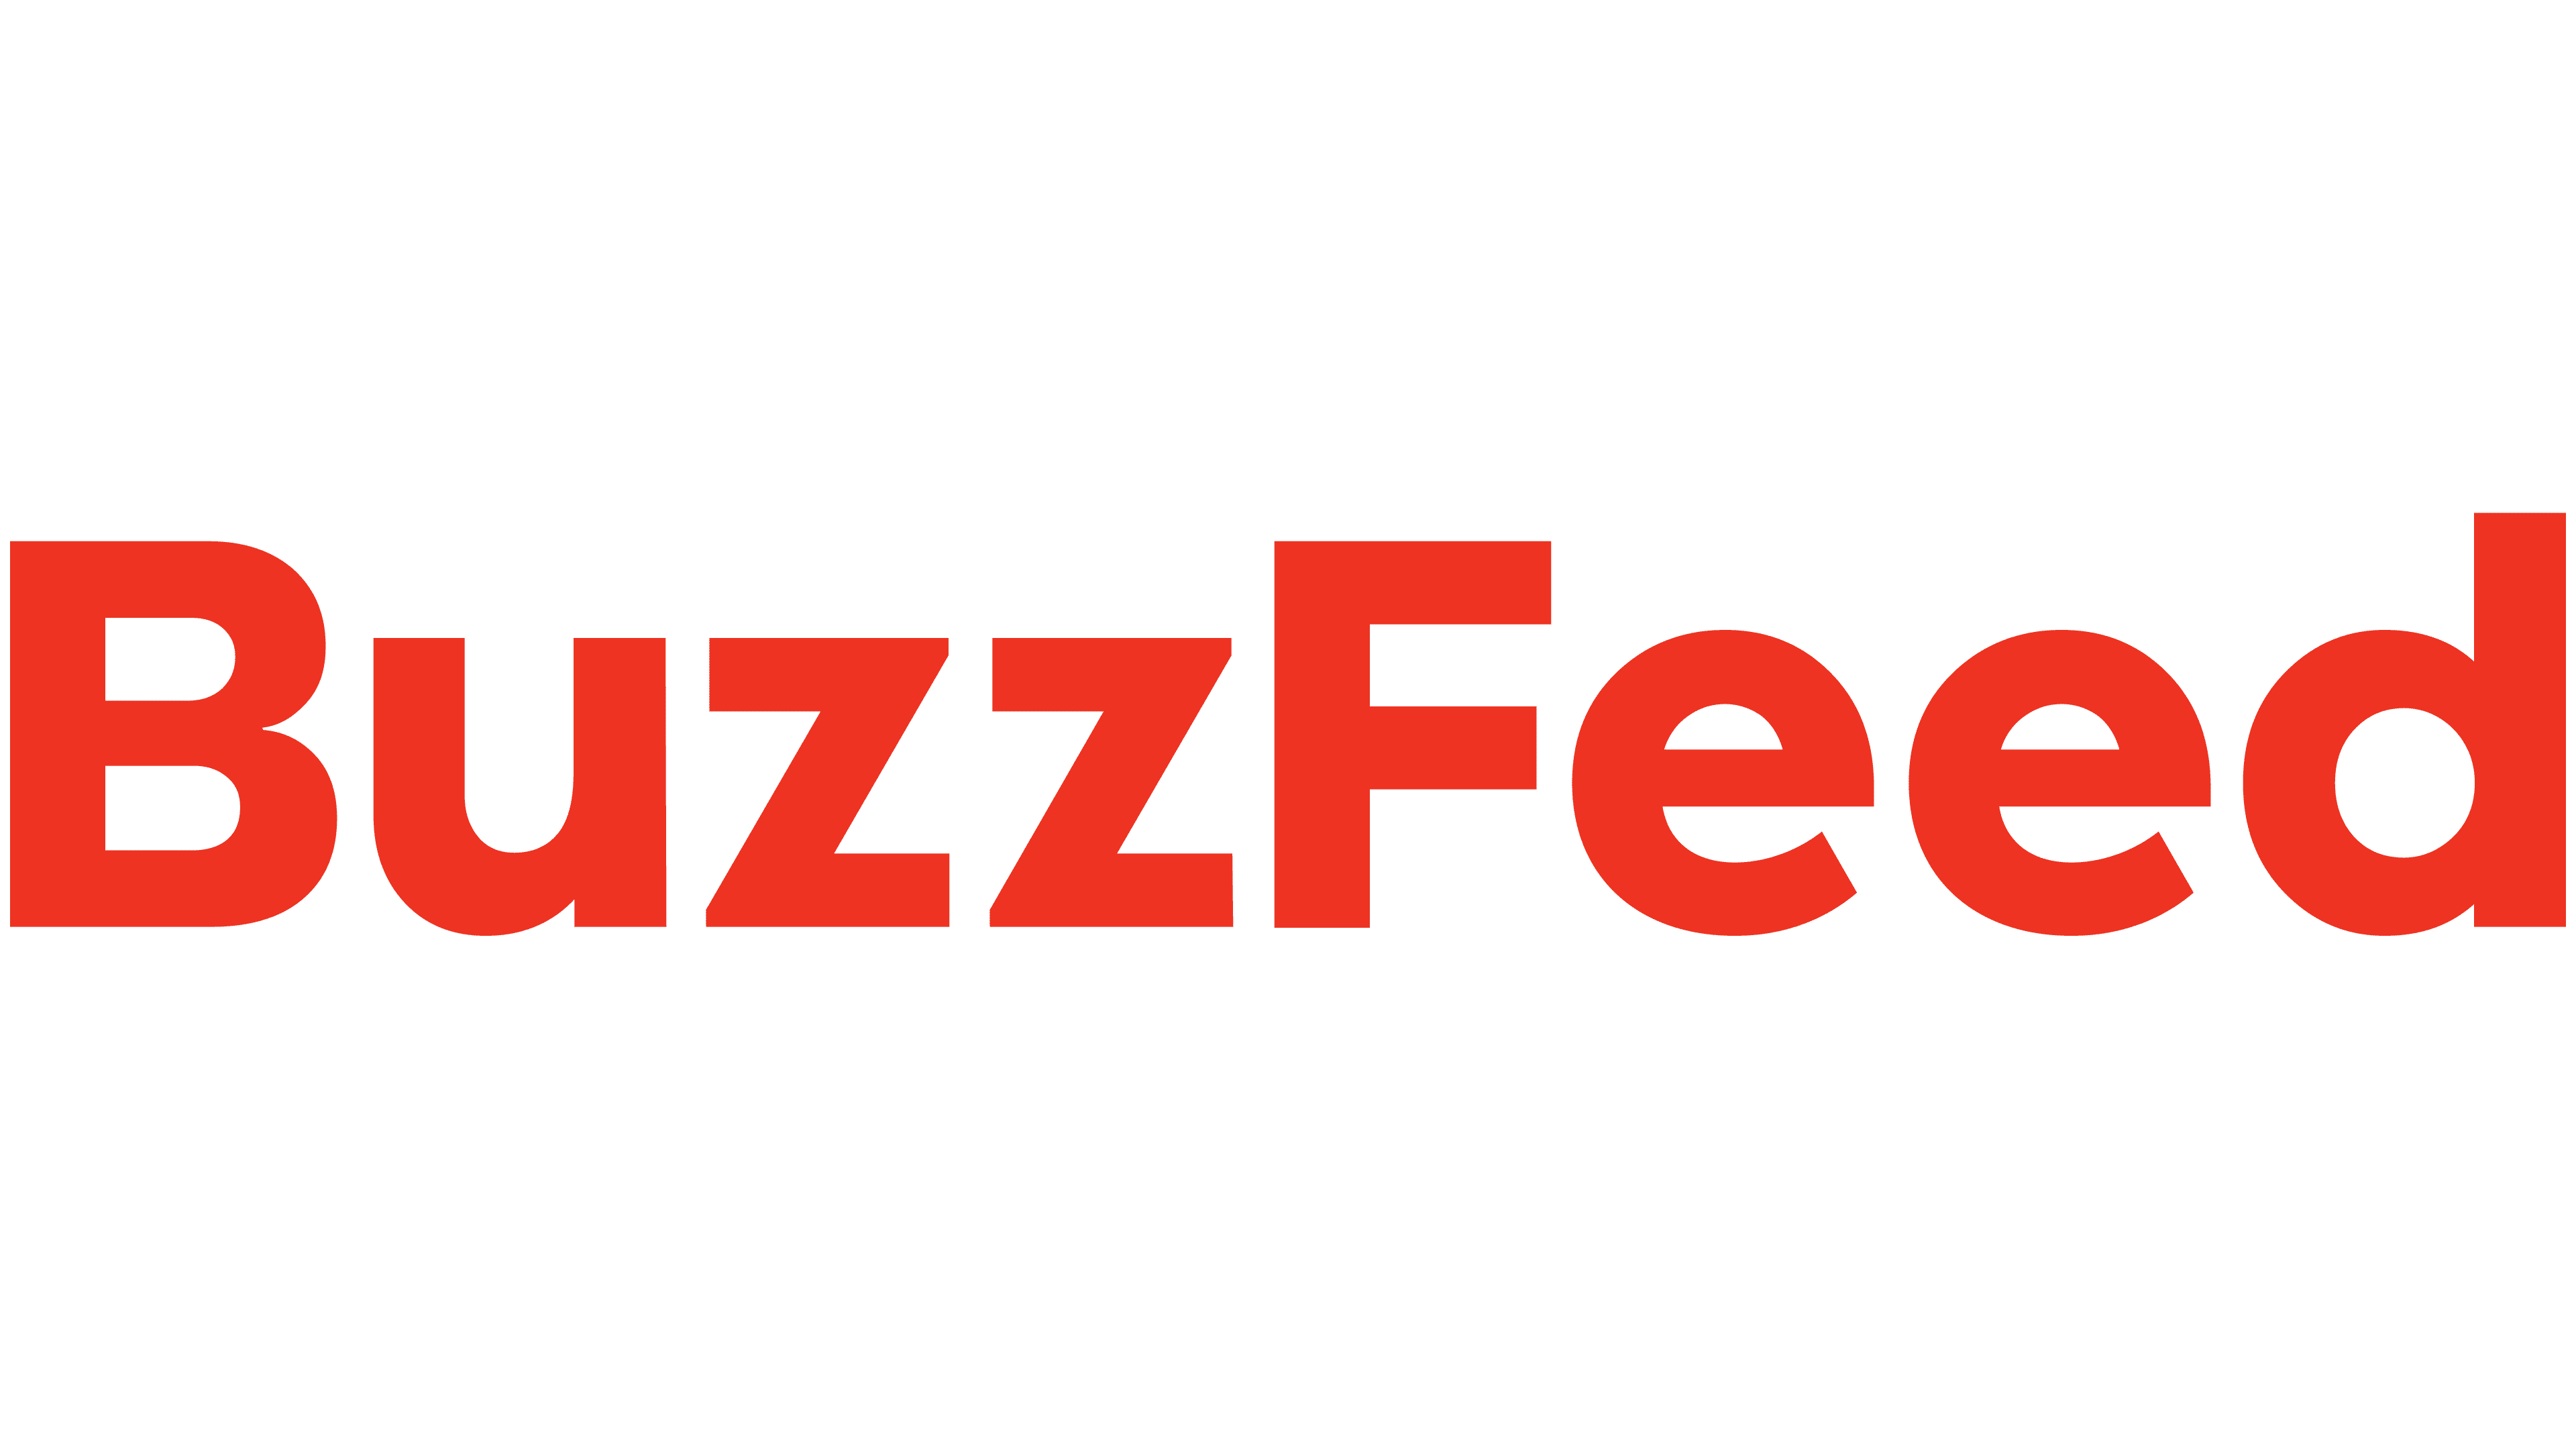 BuzzFeed-logo